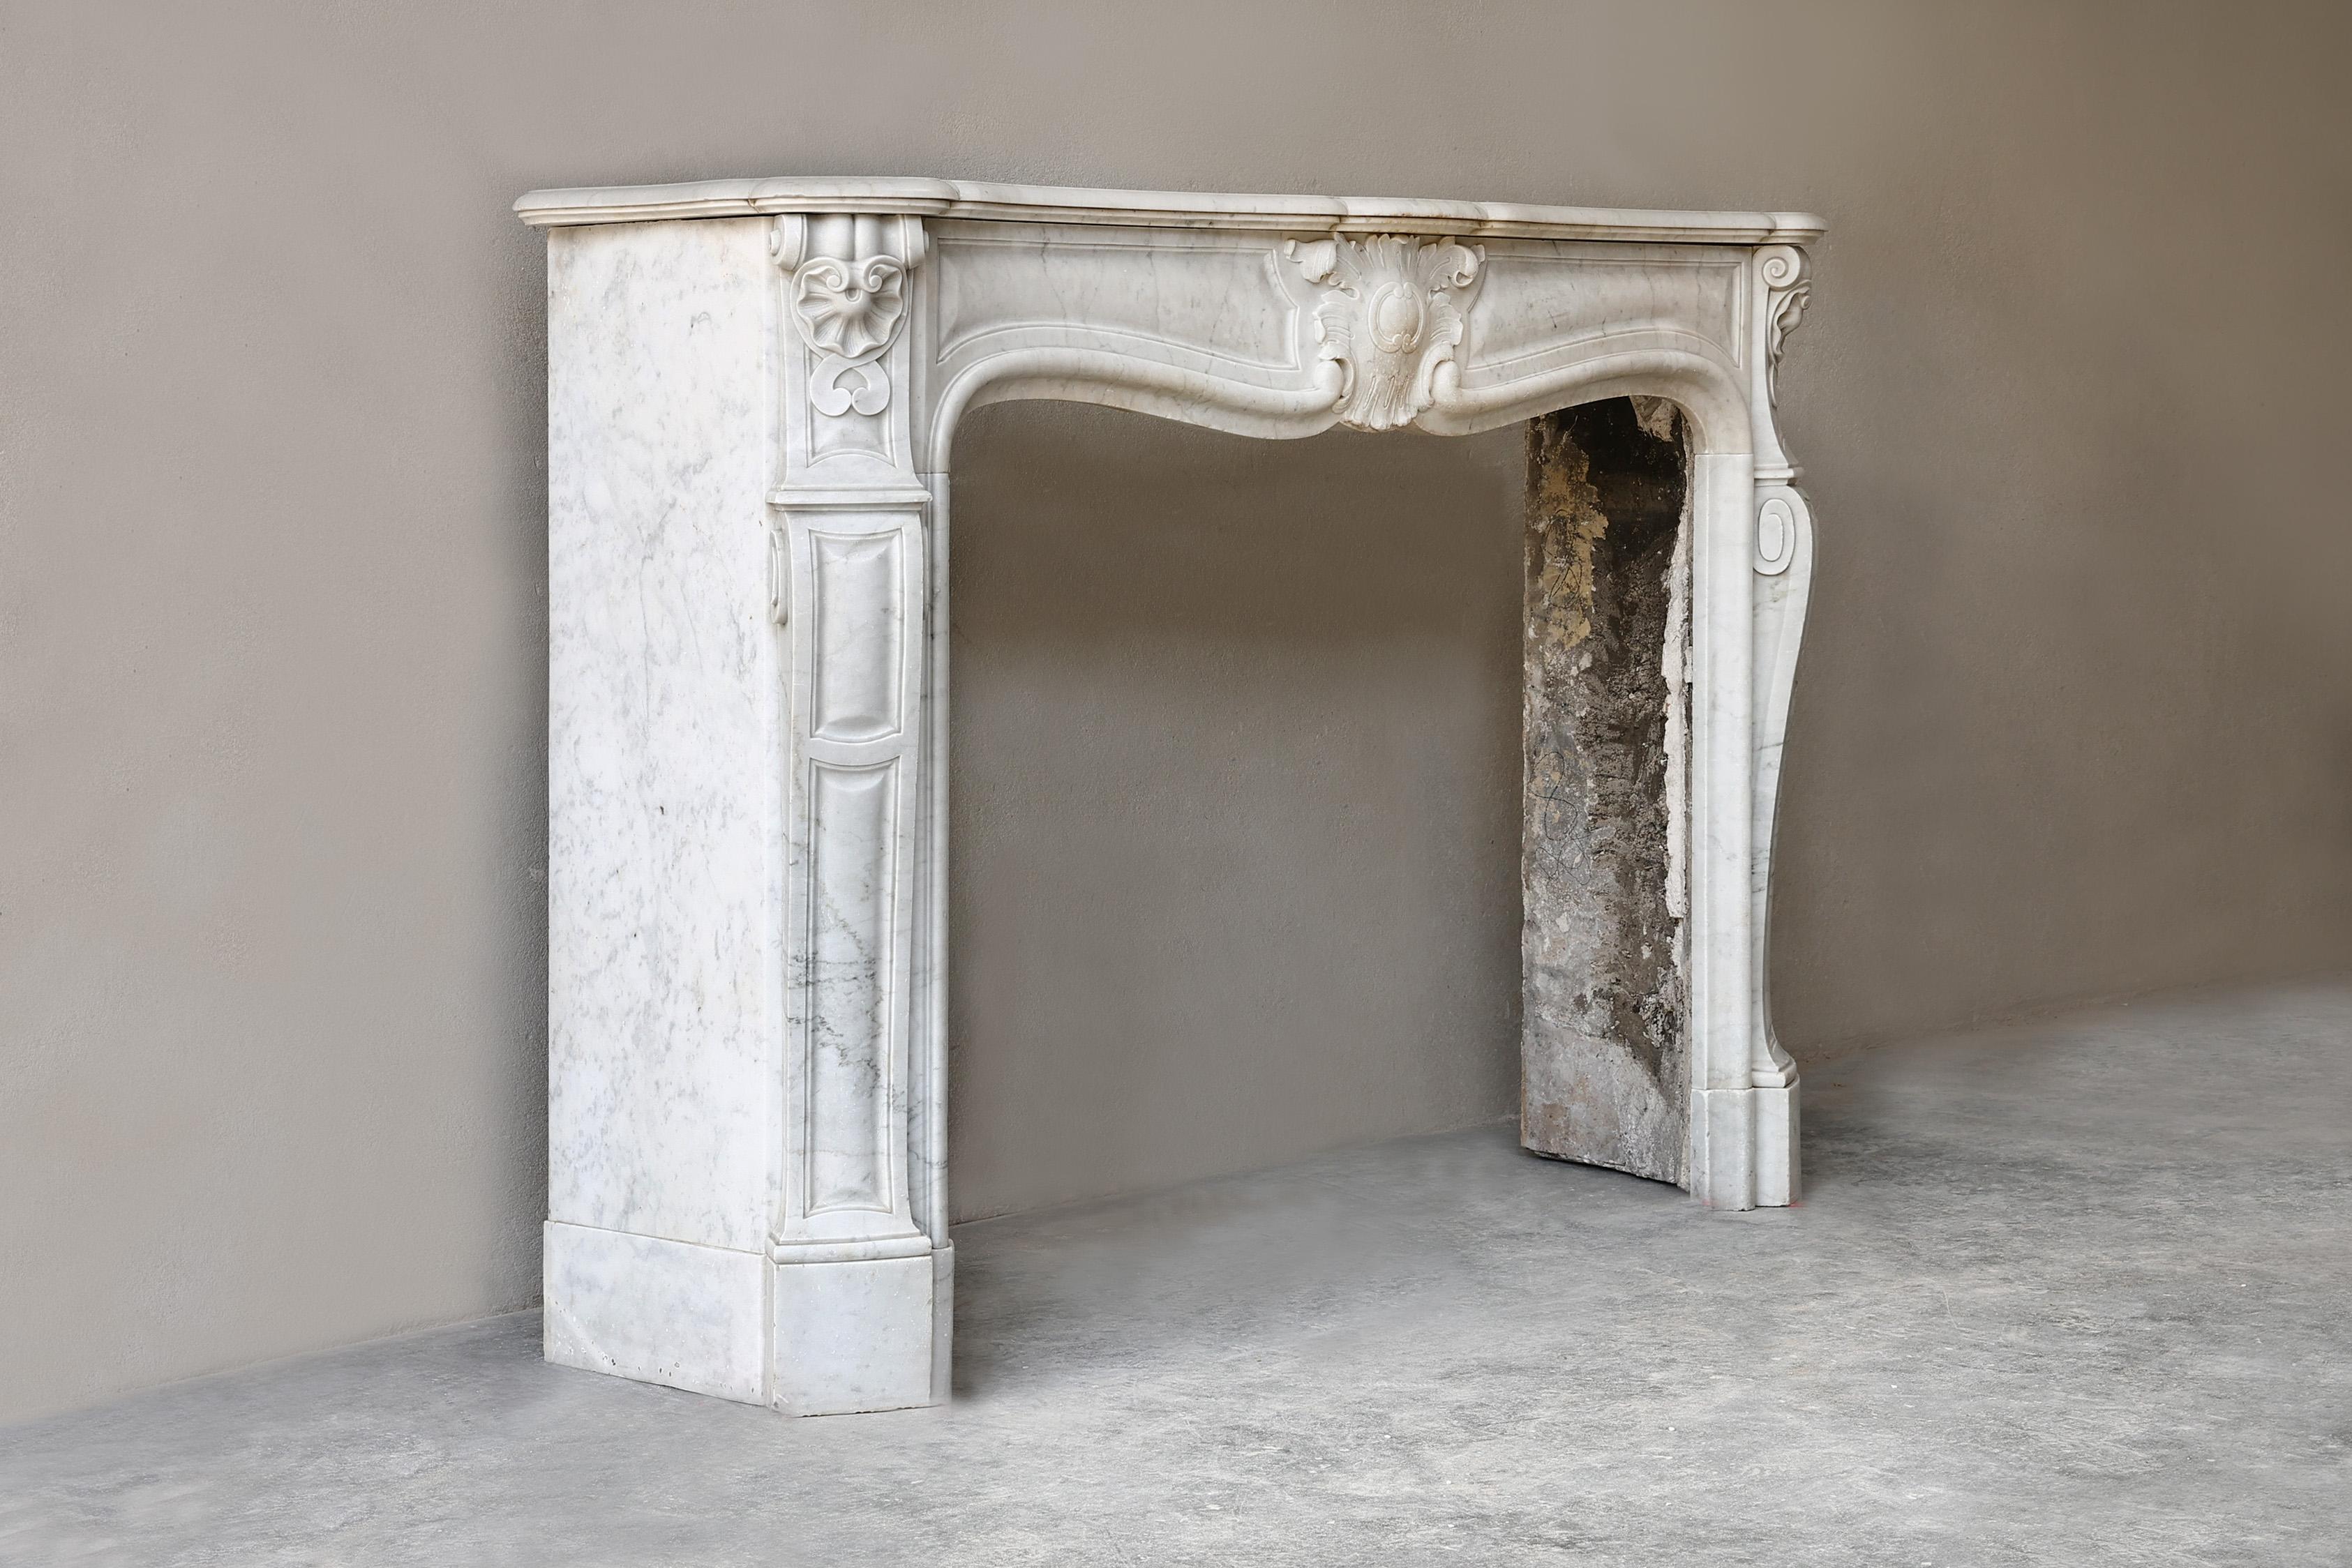 Antiker Kaminsims aus Carrara-Marmor aus dem 19. Jahrhundert! Dieser Kaminsims ist im Stil von Louis XV und hat eine schöne Jakobsmuschel in der Mitte des vorderen Teils und durchgehend auf den Beinen. Ein schicker Kamin, der sehr gut in eine